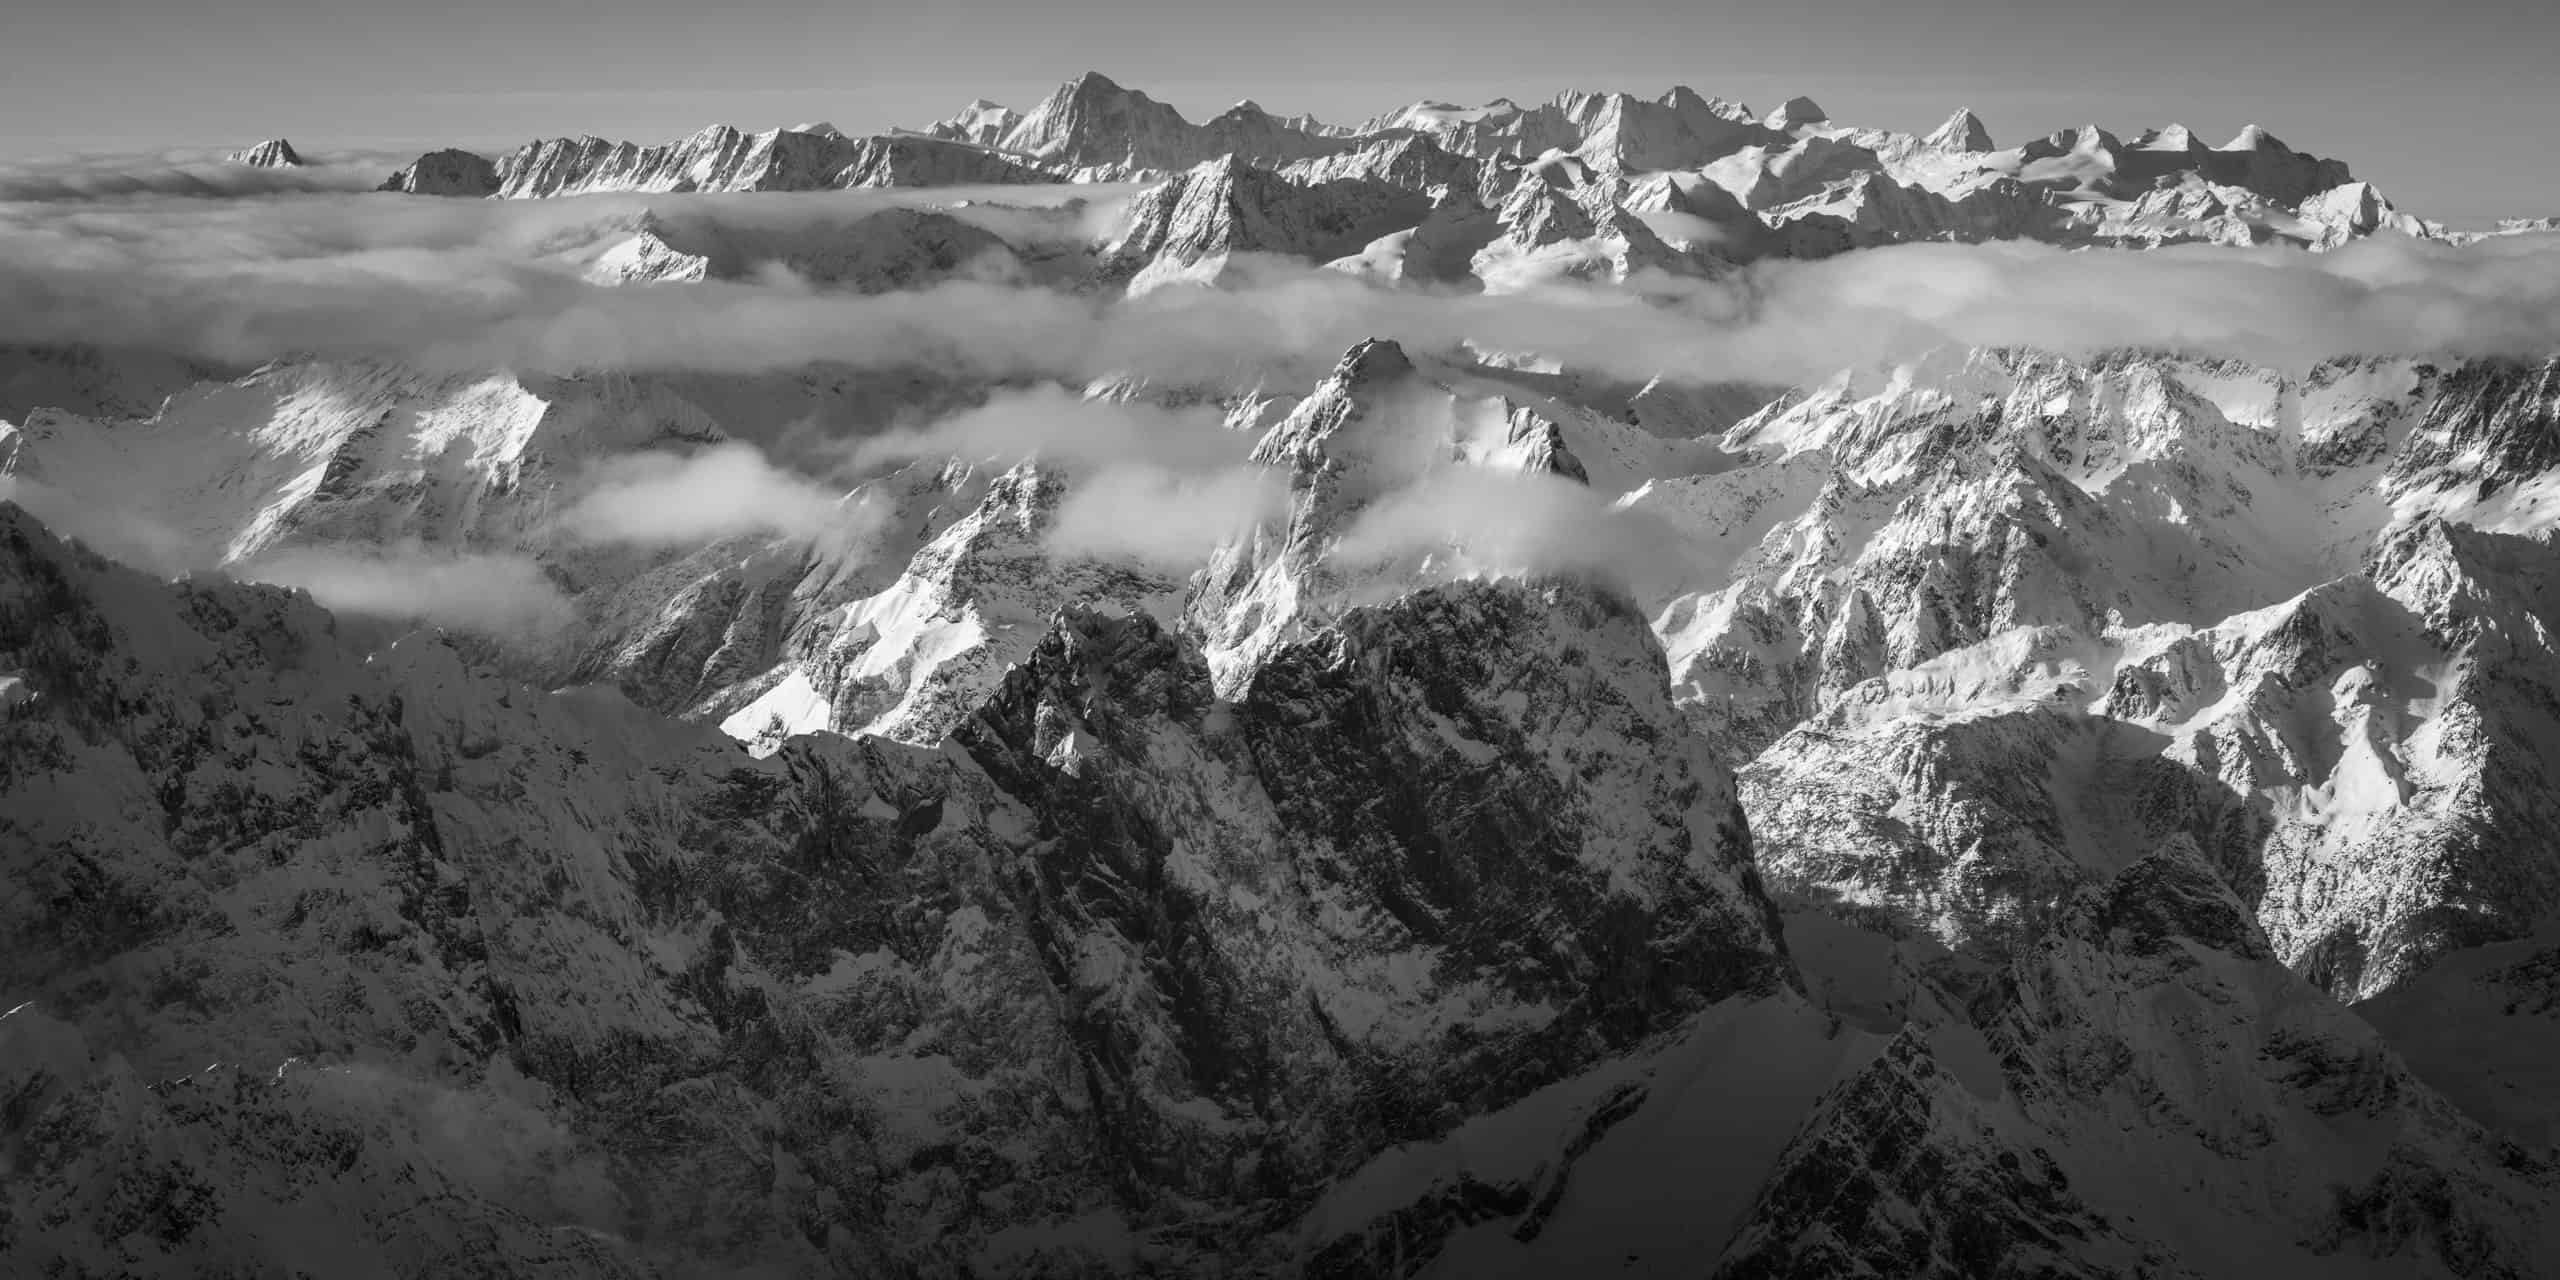 Panoramafoto von Gross Windgällen und den Berner Alpen - Panorama der Berner Alpen aus dem Nebel mit Gross Windgällen im Vordergrund.